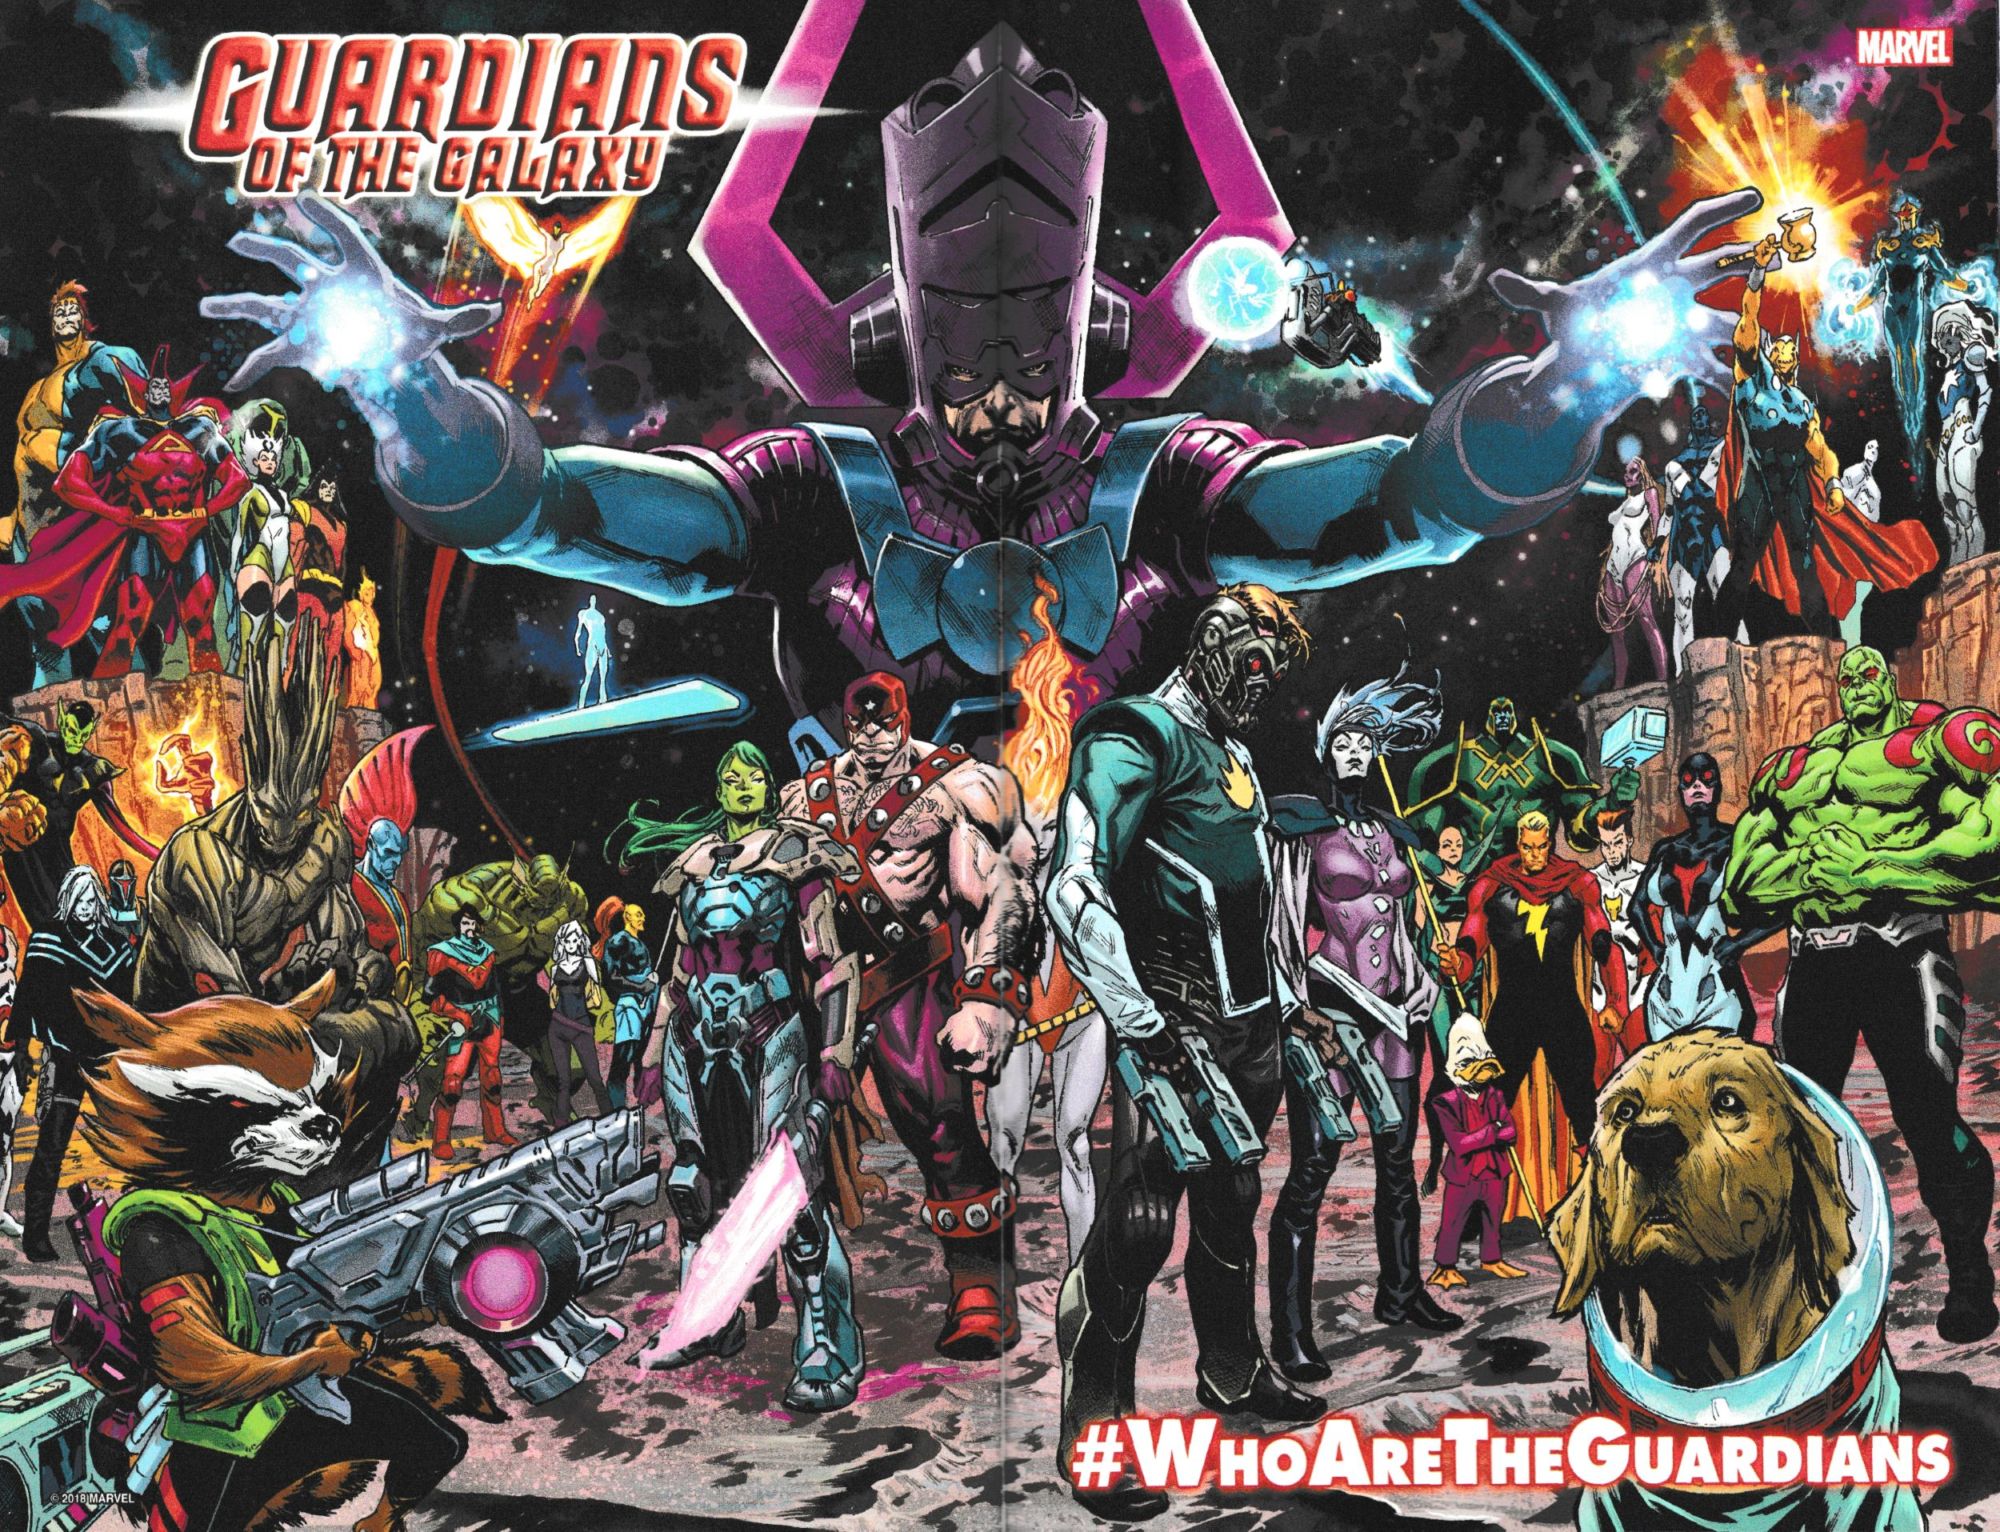 Quem são os Guardiões - Guardiões da Galáxia - Marvel - Who are the guardians - Blog Farofeiros